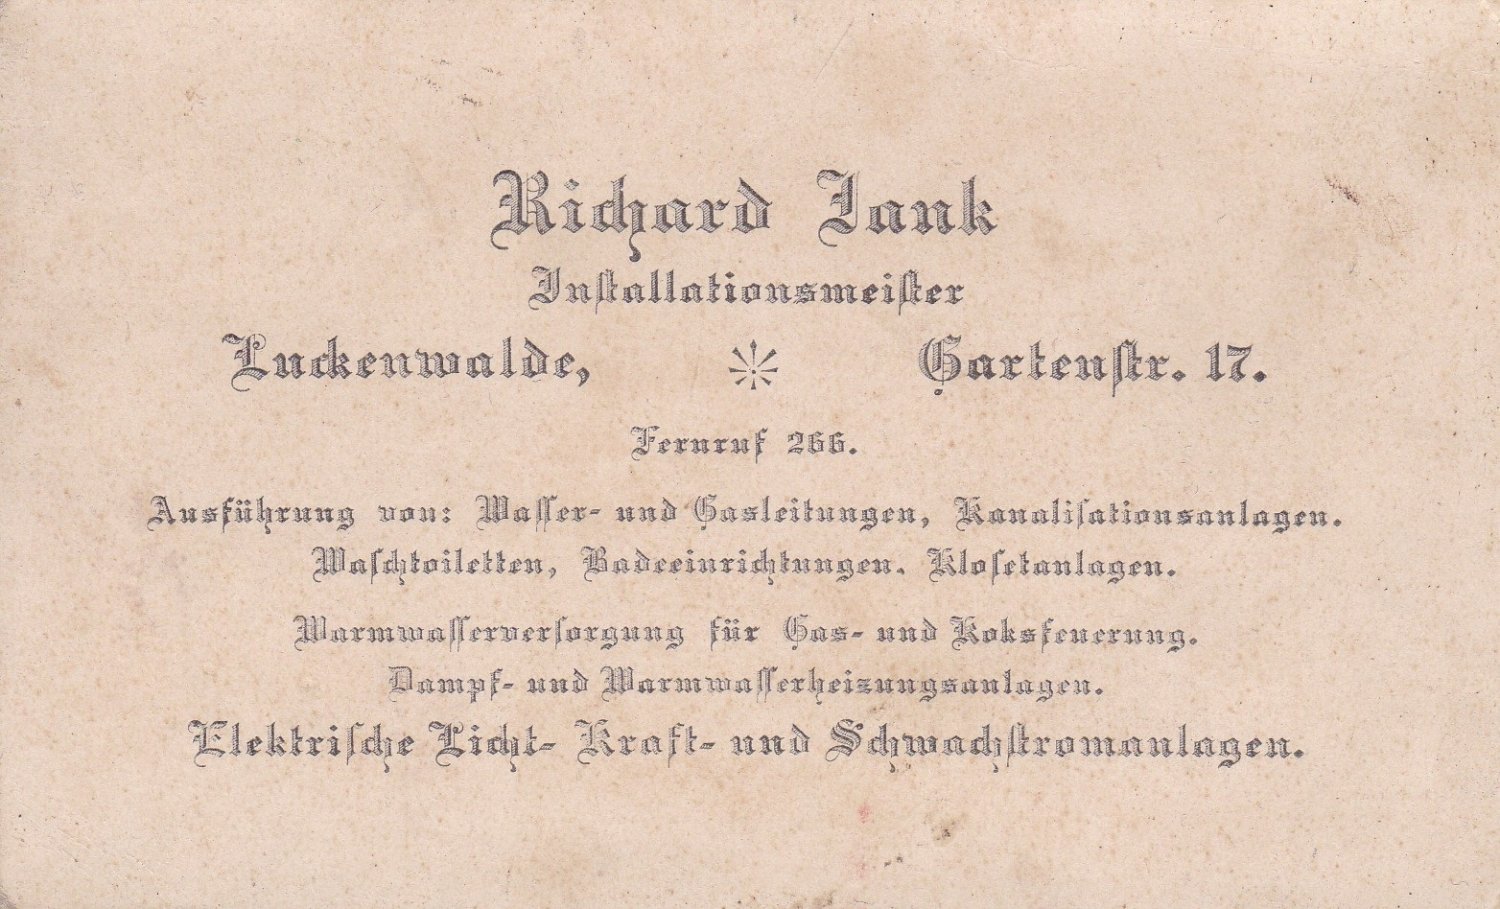 JANK, Richard (Herausgeber):  Richard Jank, Installationsmeister. Luckenwalde, Gartenstr. 17. (Original-Firmenwerbung). 